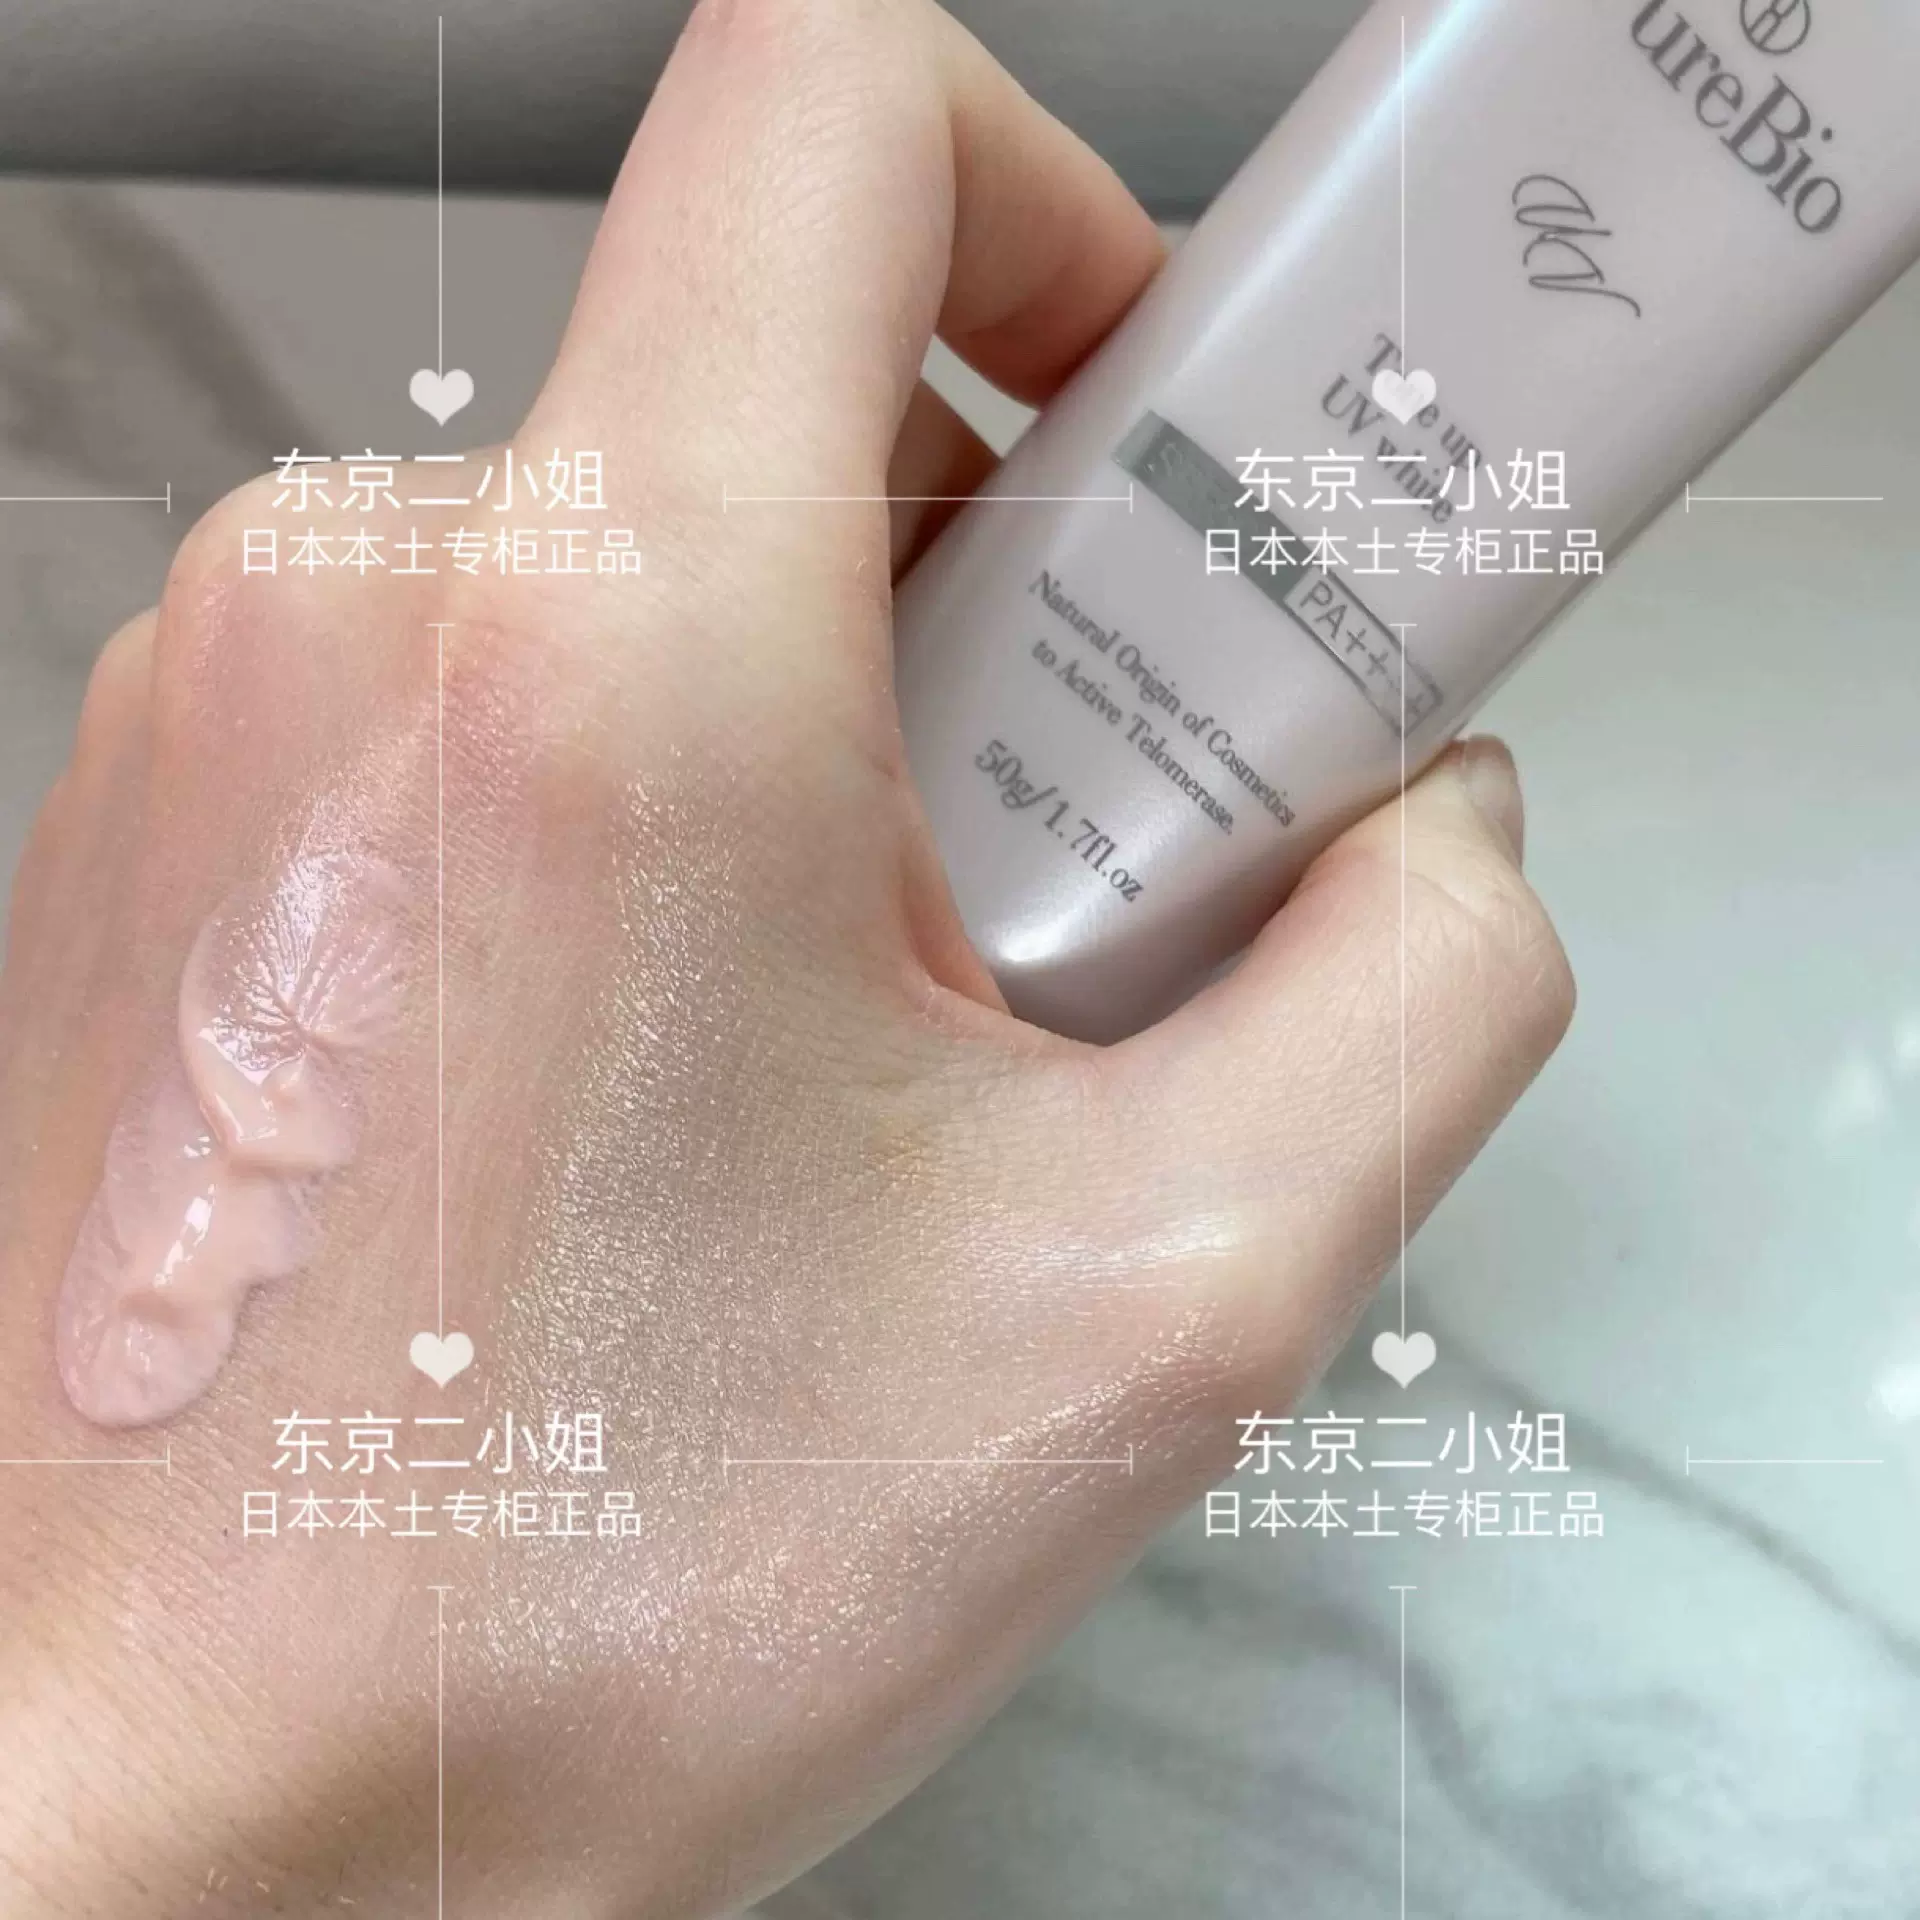 含89%美容液成分日本covermark傲立卸妆乳200g-Taobao Singapore